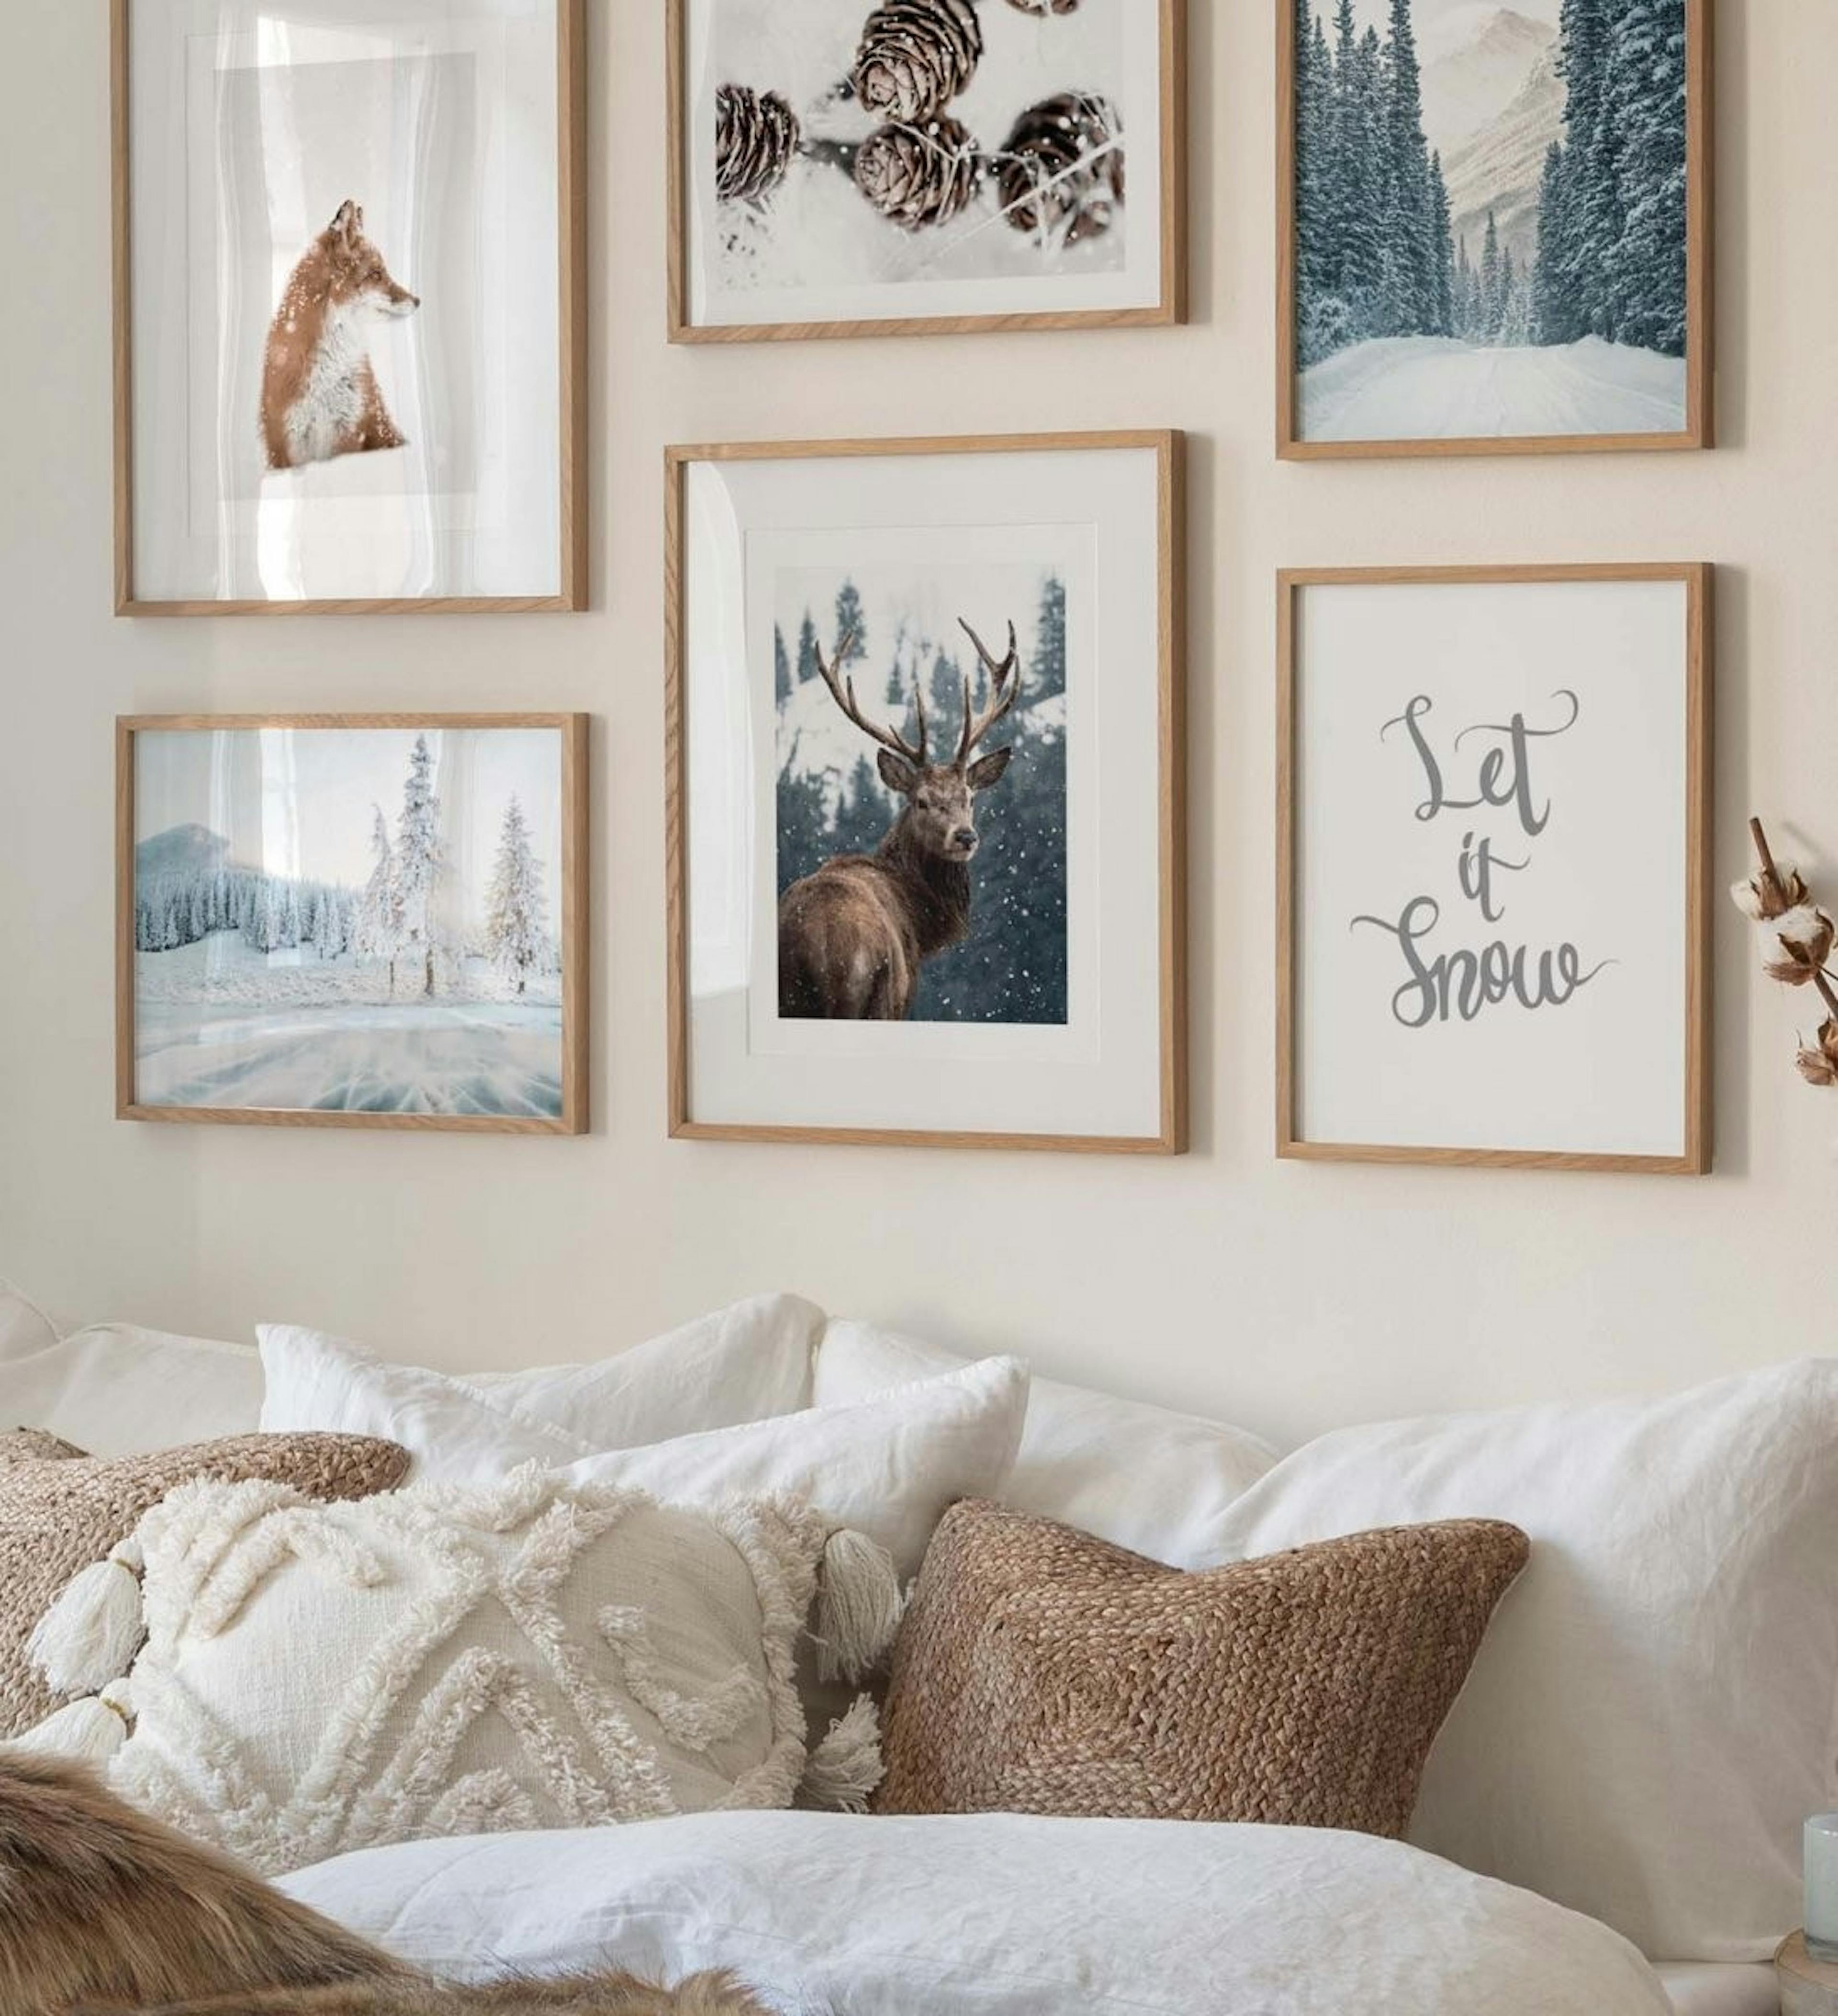 Pared de la galería con carteles invernales de conos, un zorro y un ciervo rojo combinados con fotografías de naturaleza inverna